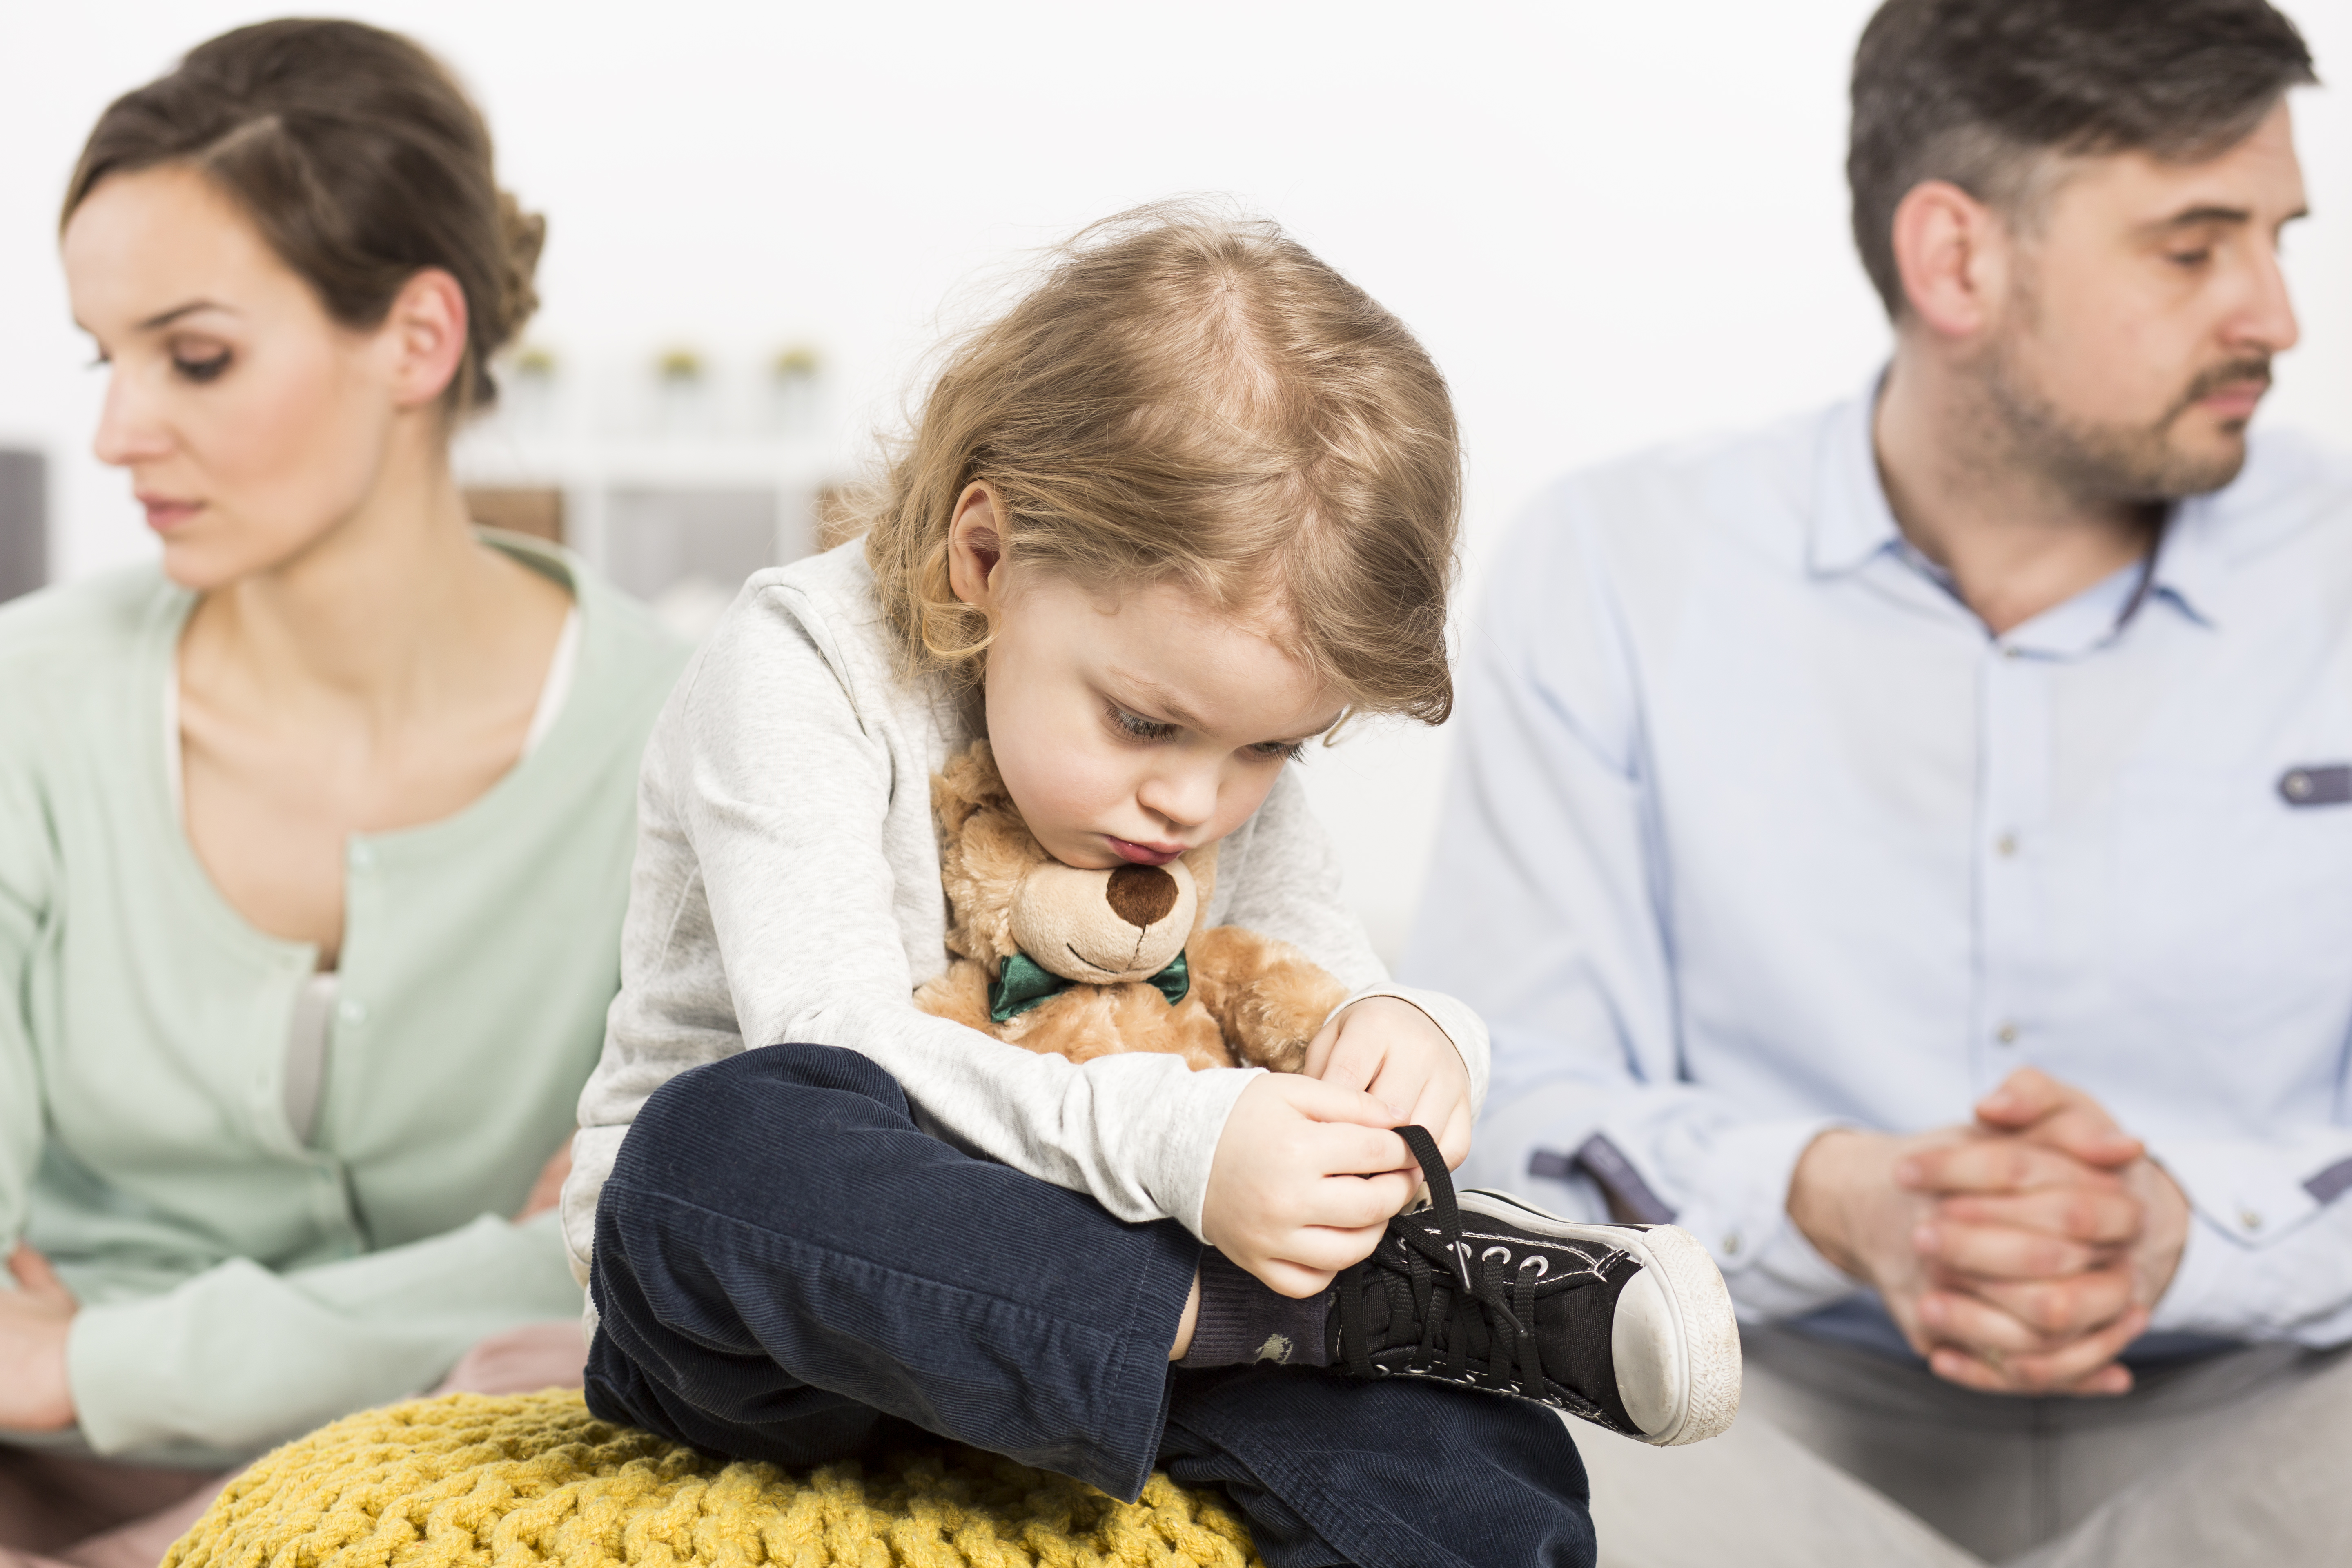 Дитина і розлучення: як допомогти молодшому члену сім'ї безболісно пережити те, що сталося  